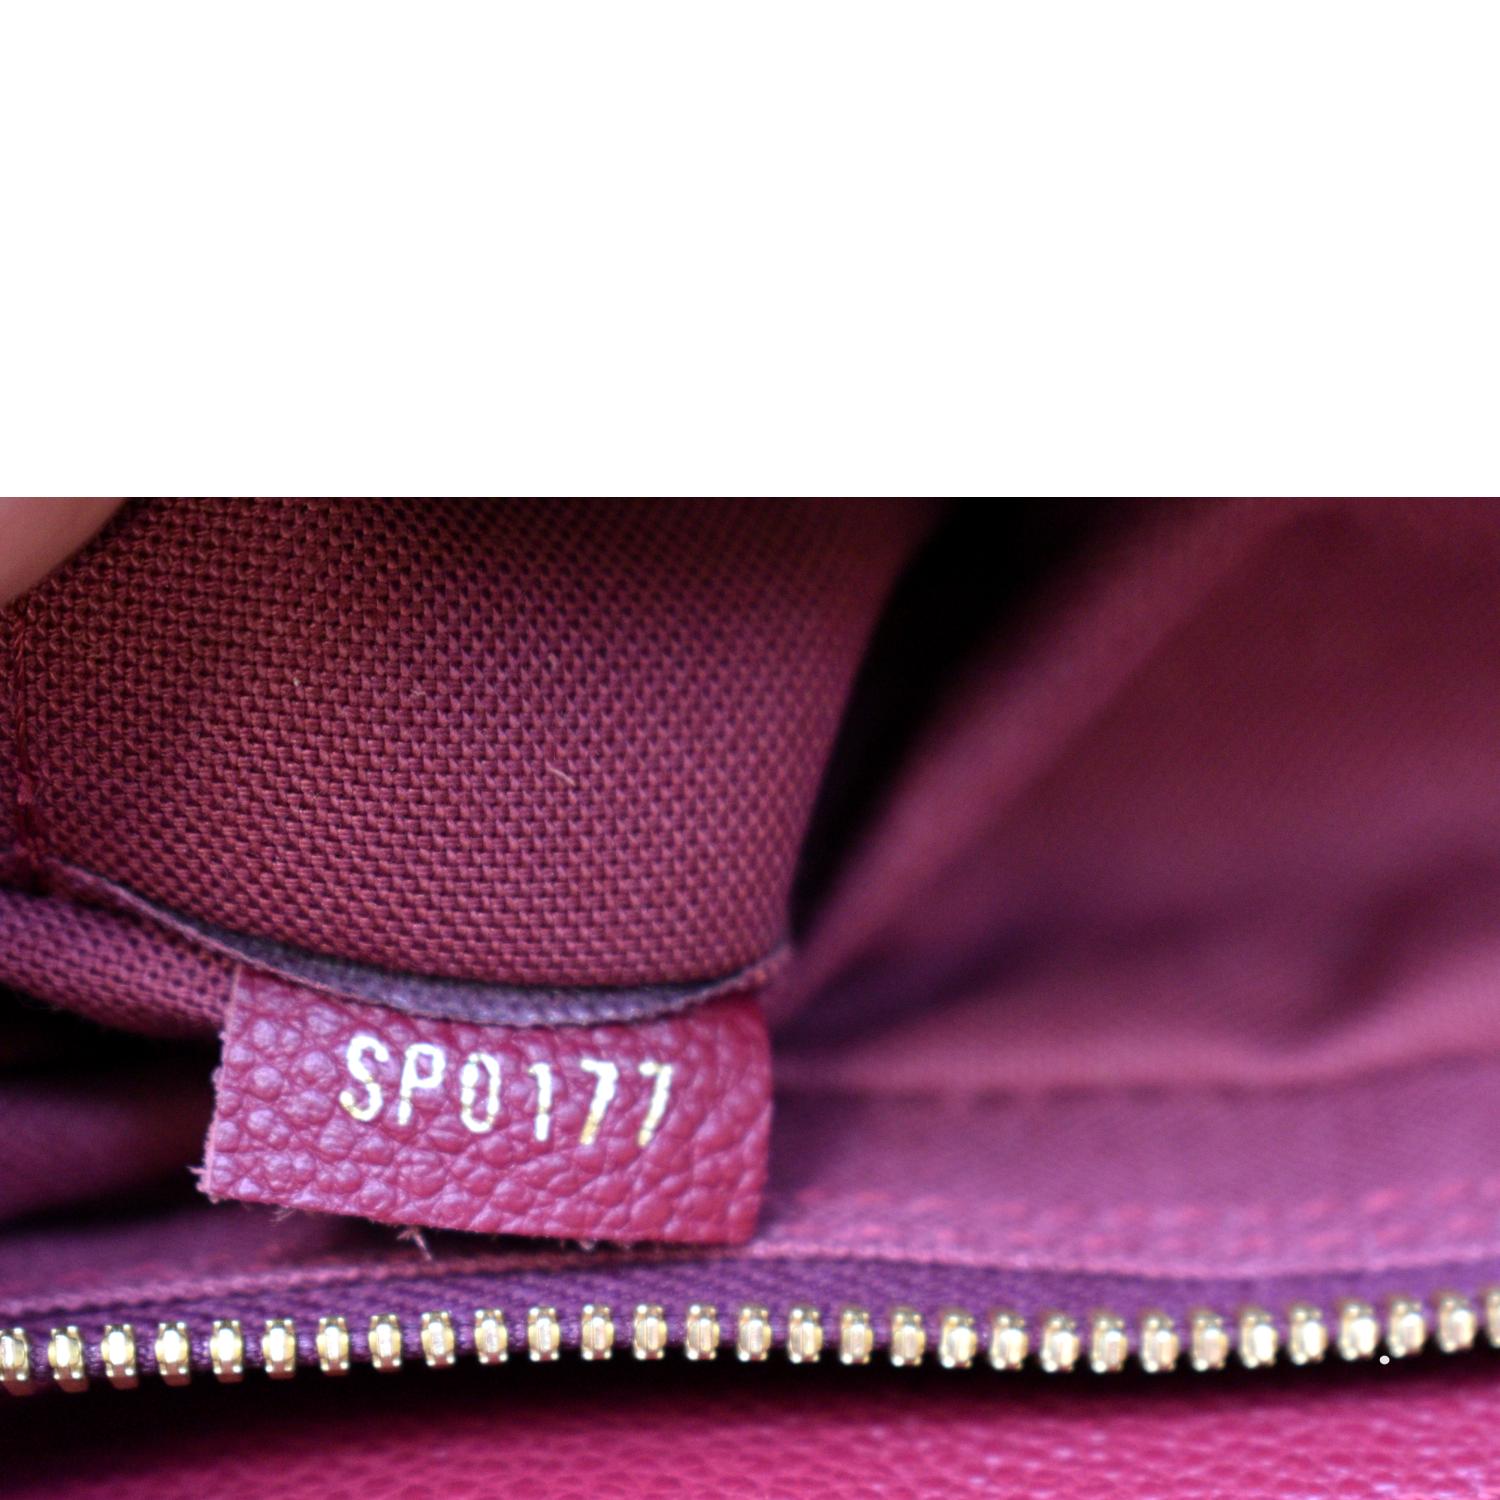 Louis Vuitton Vosges Handbag Whipstitch Monogram Empreinte Leather